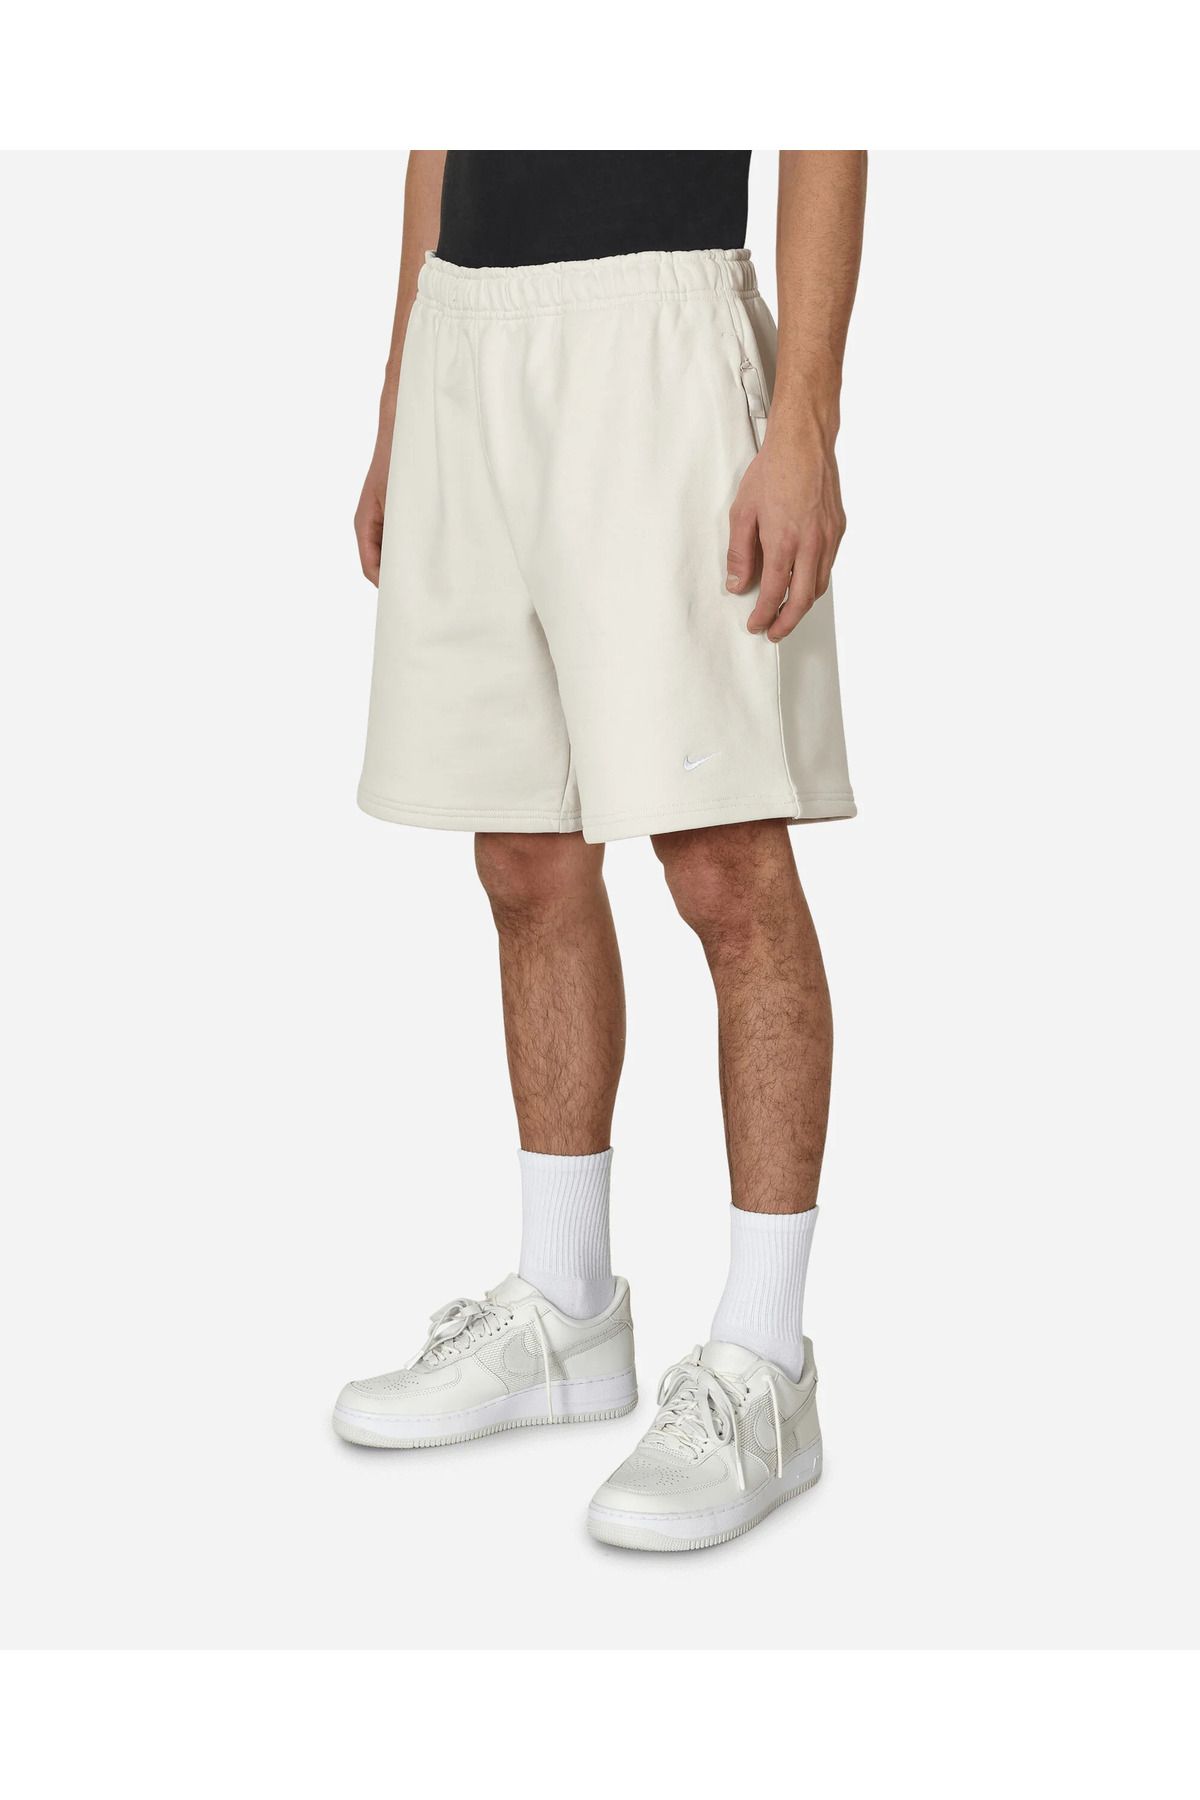 Nike Sportswear solo swoosh fleece unisex bol kesim fransız kumaş beyaz şort